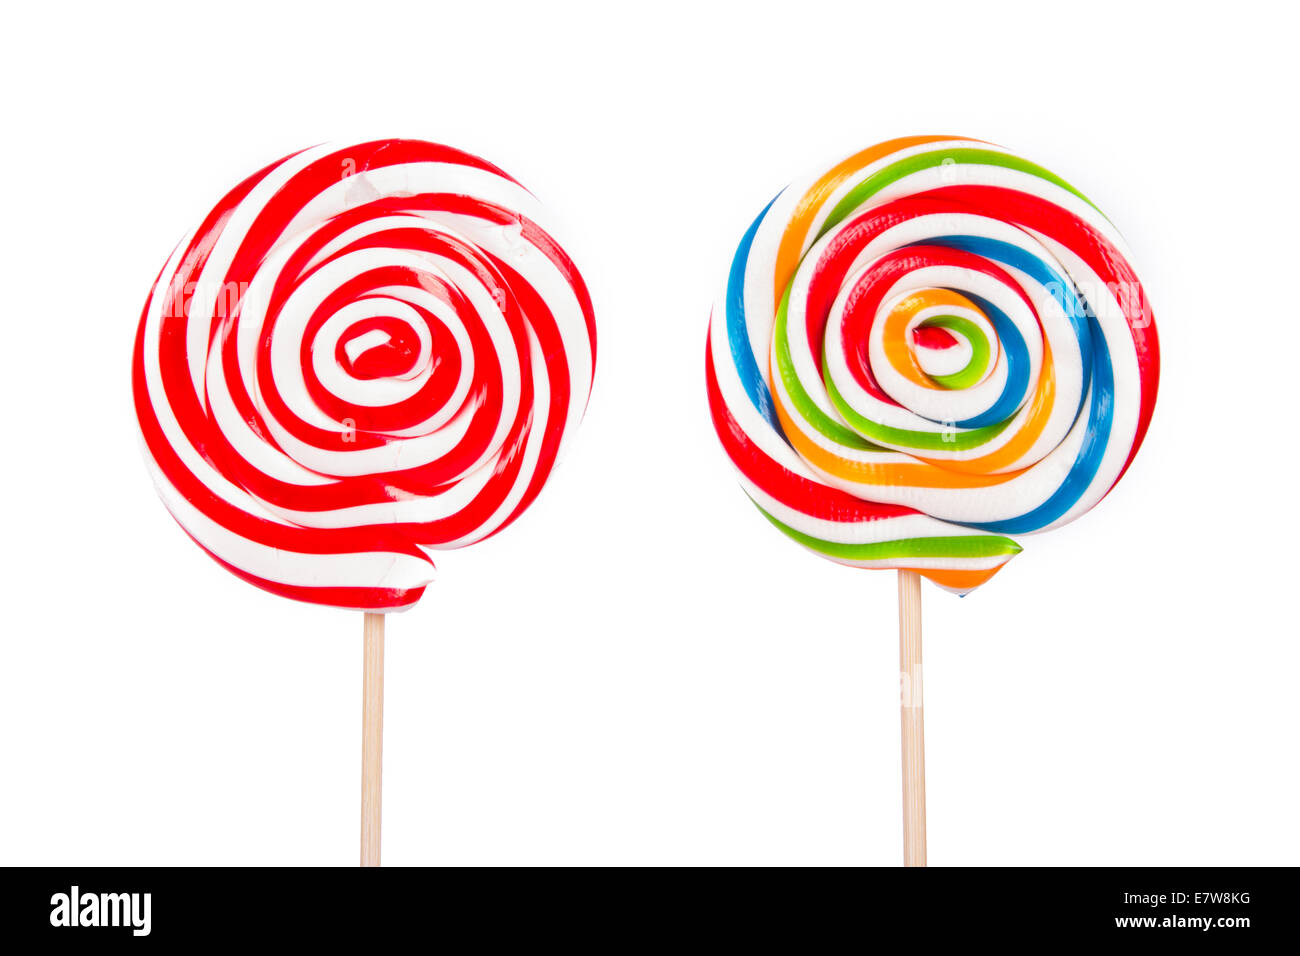 Espiral colorida lollipop caramelo en stick, aislado sobre fondo blanco. Foto de stock